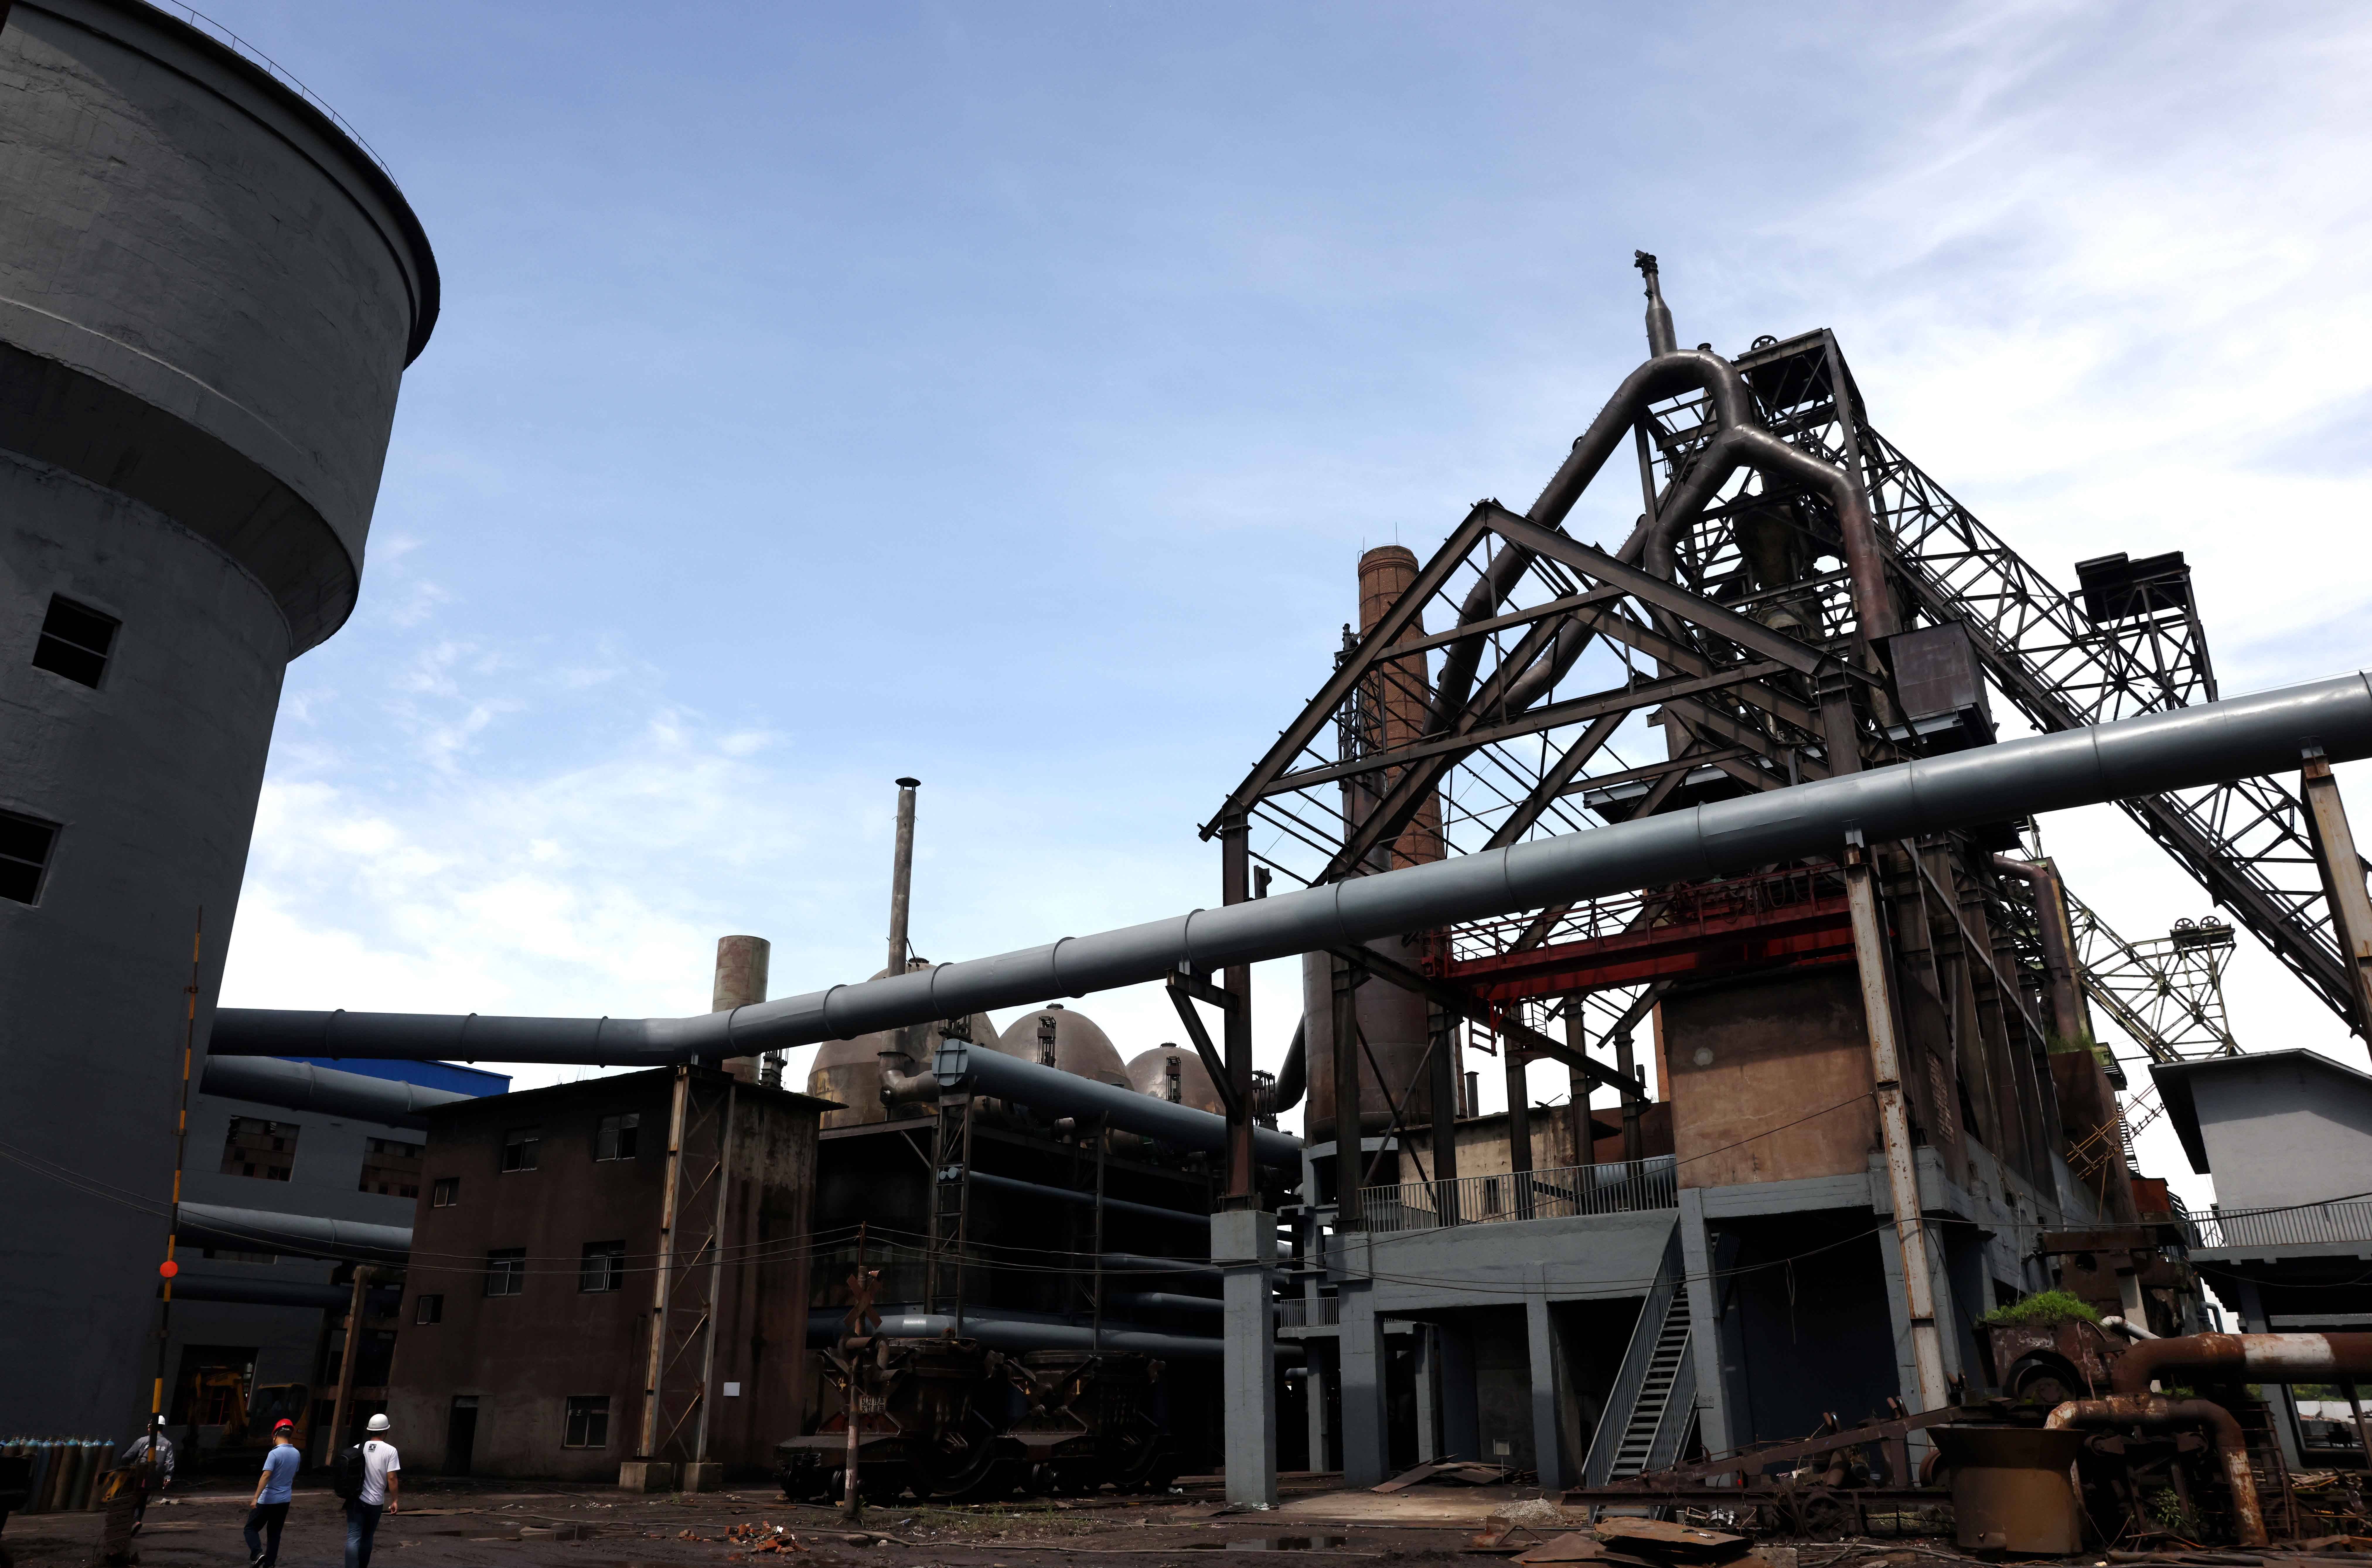 这是5月27日拍摄的原合肥钢铁厂工业设施.